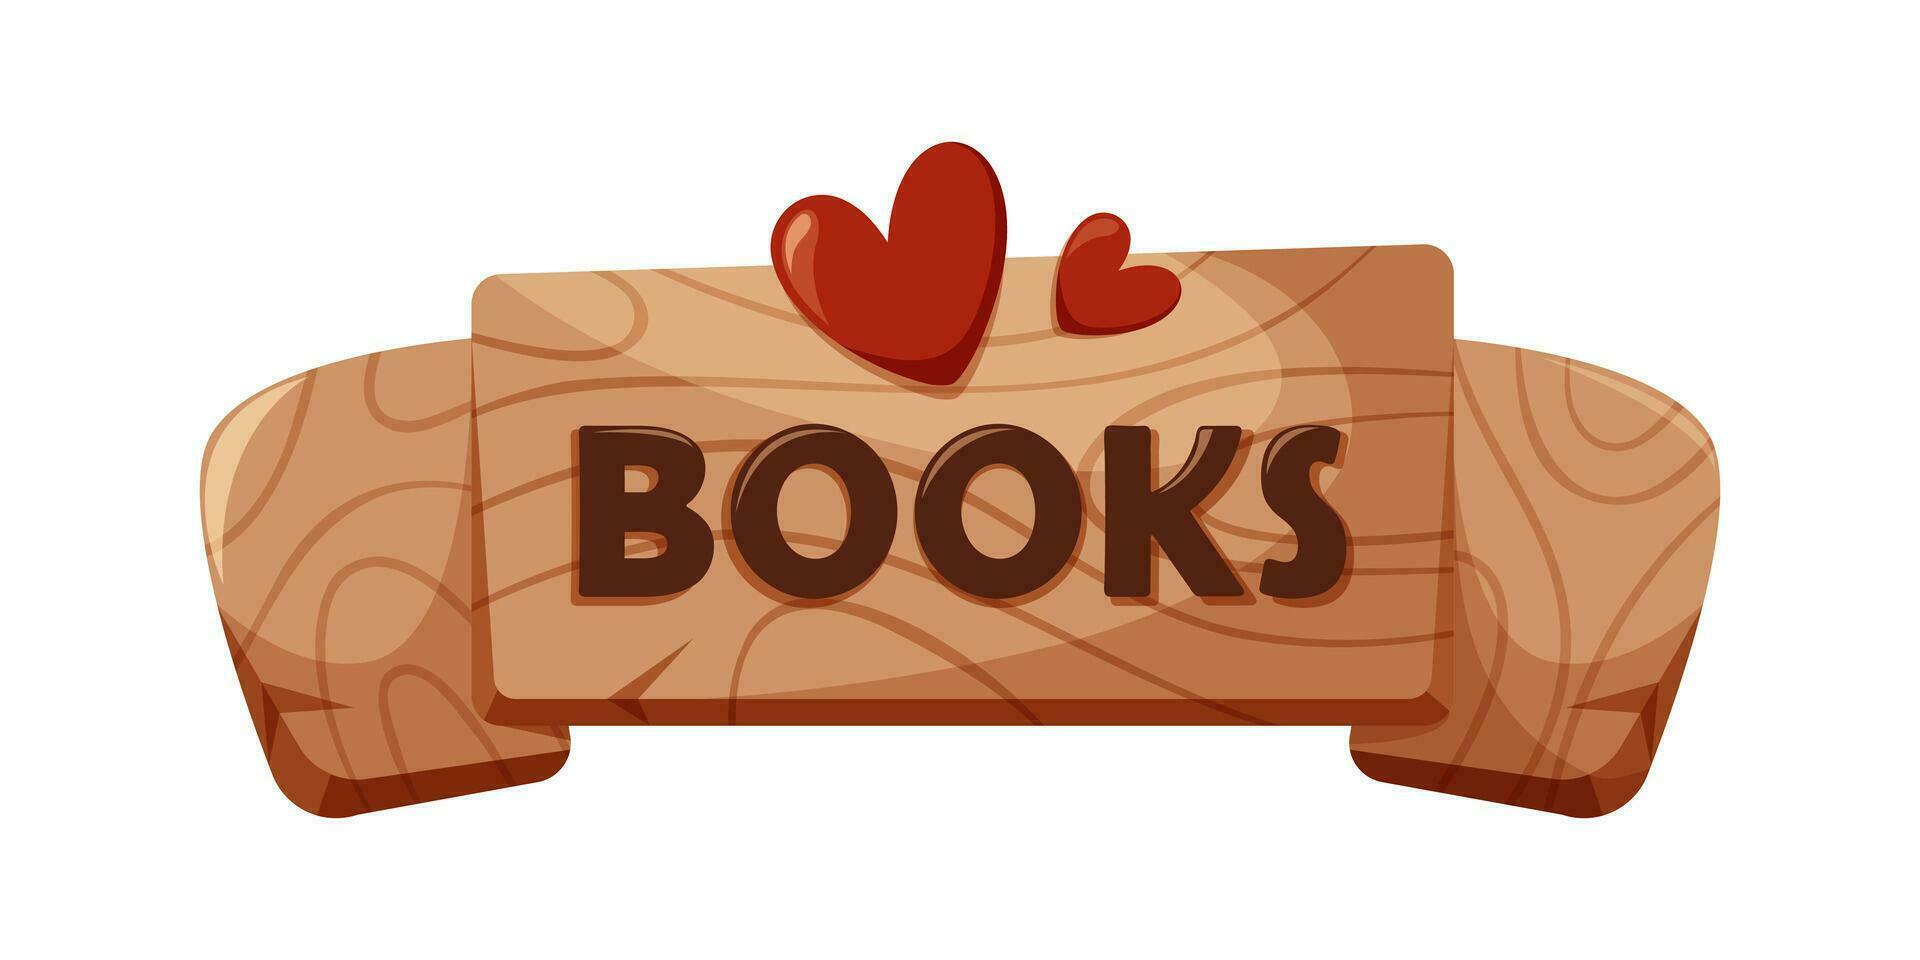 de madera tablero con libro inscripción y corazones. concepto de educación, libro amantes y bibliotecas, librerías leer más. dibujos animados vector ilustración